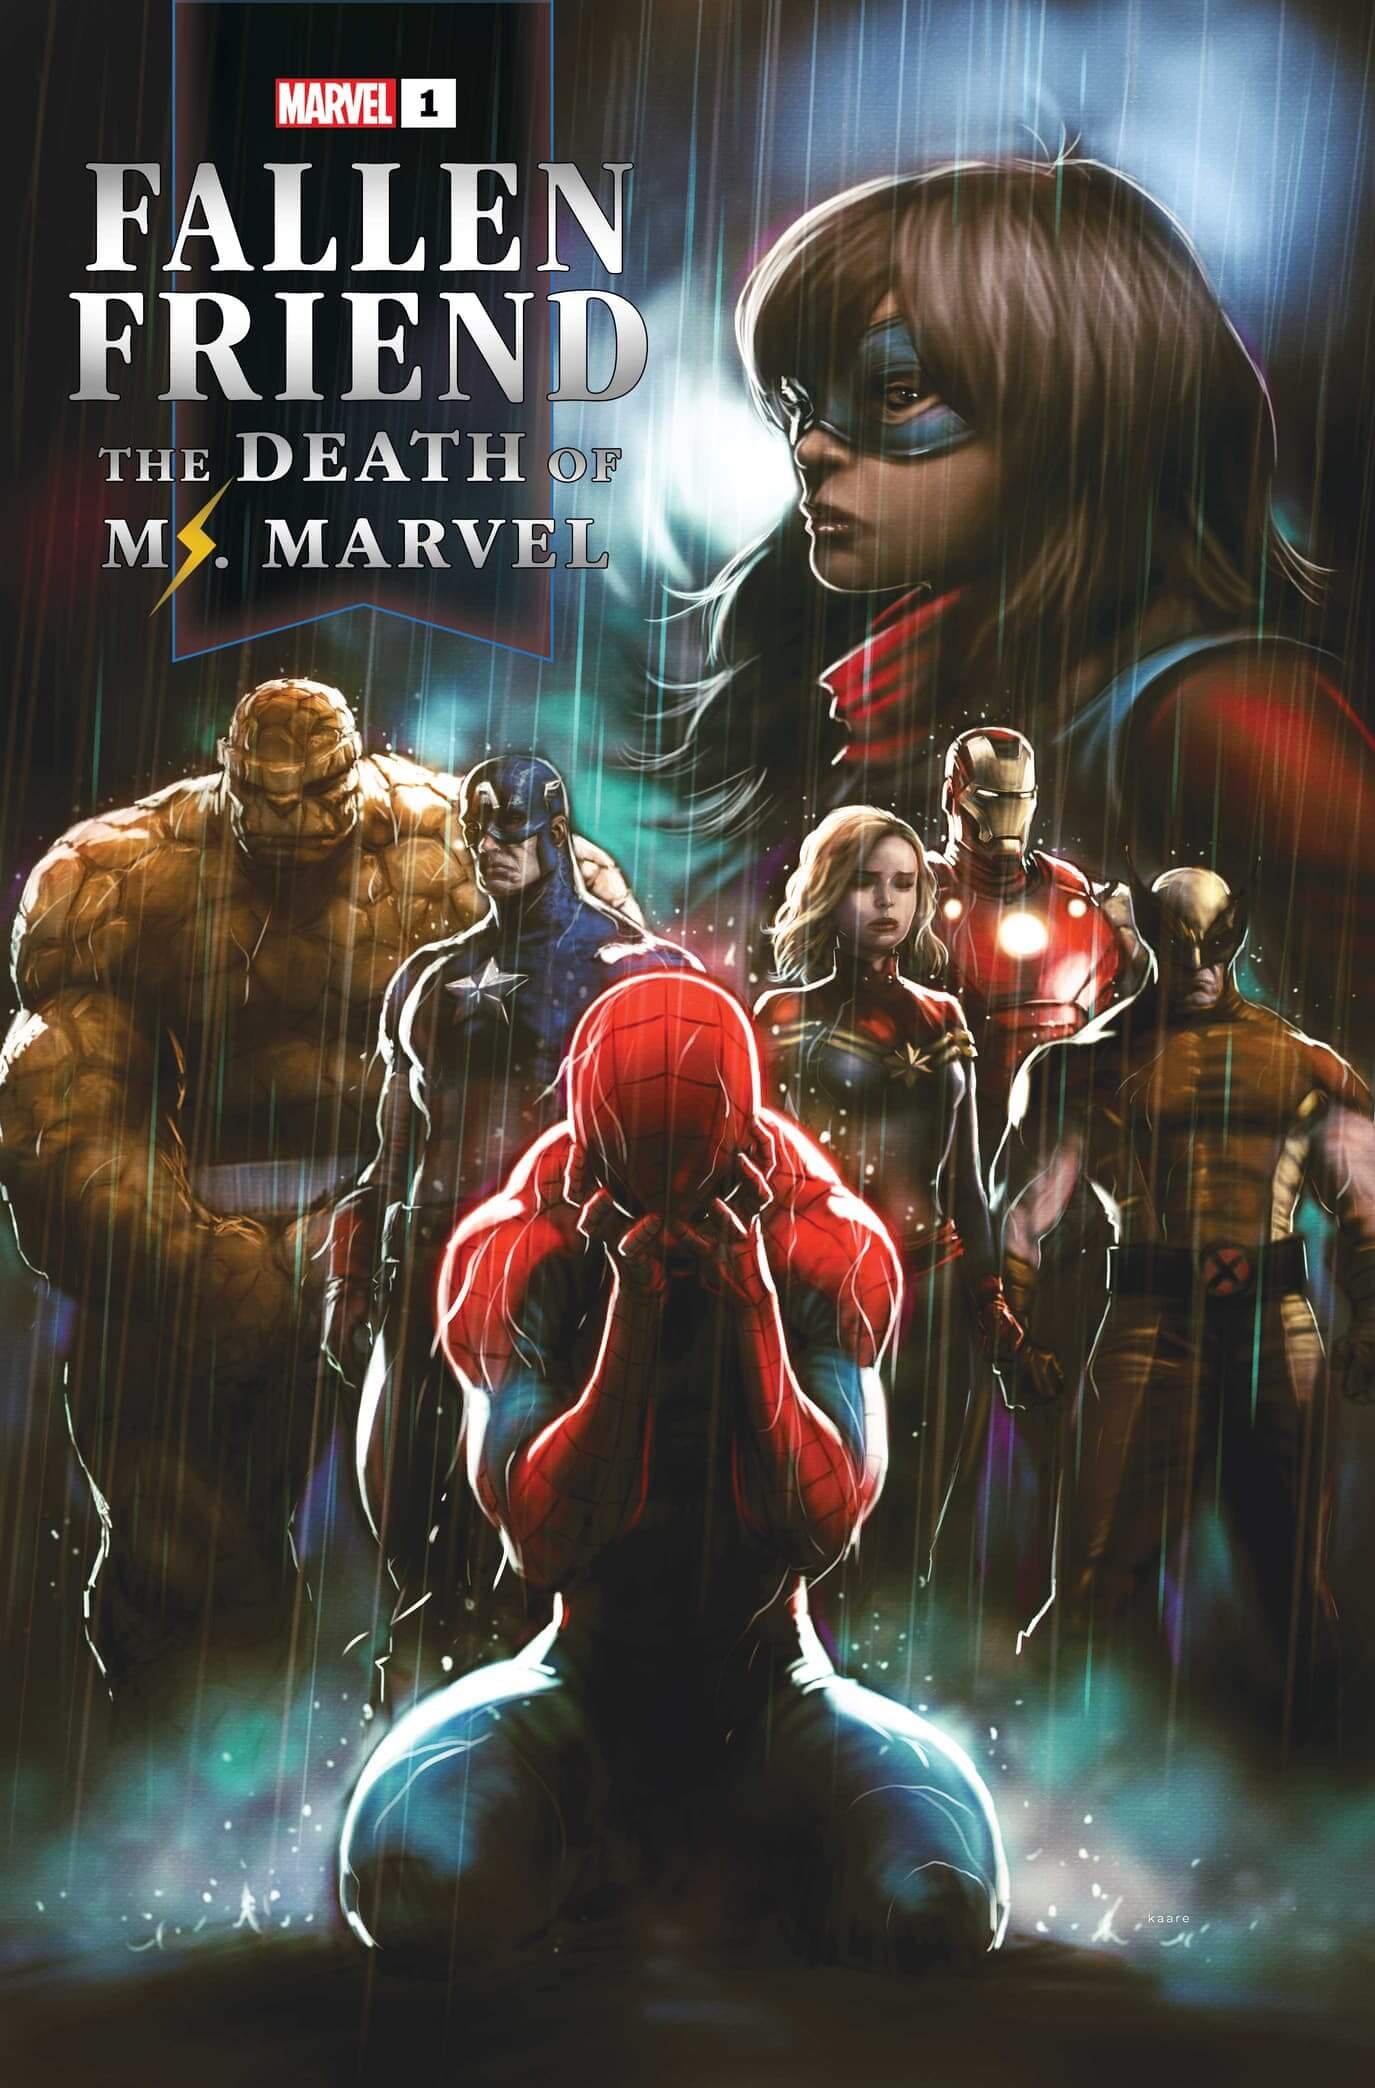 Couverture de Fallen Friend : The Death of Ms Marvel par Kaare Andrews, suite au décès de Kamala Khan dans Amazing Spider-Man #26.